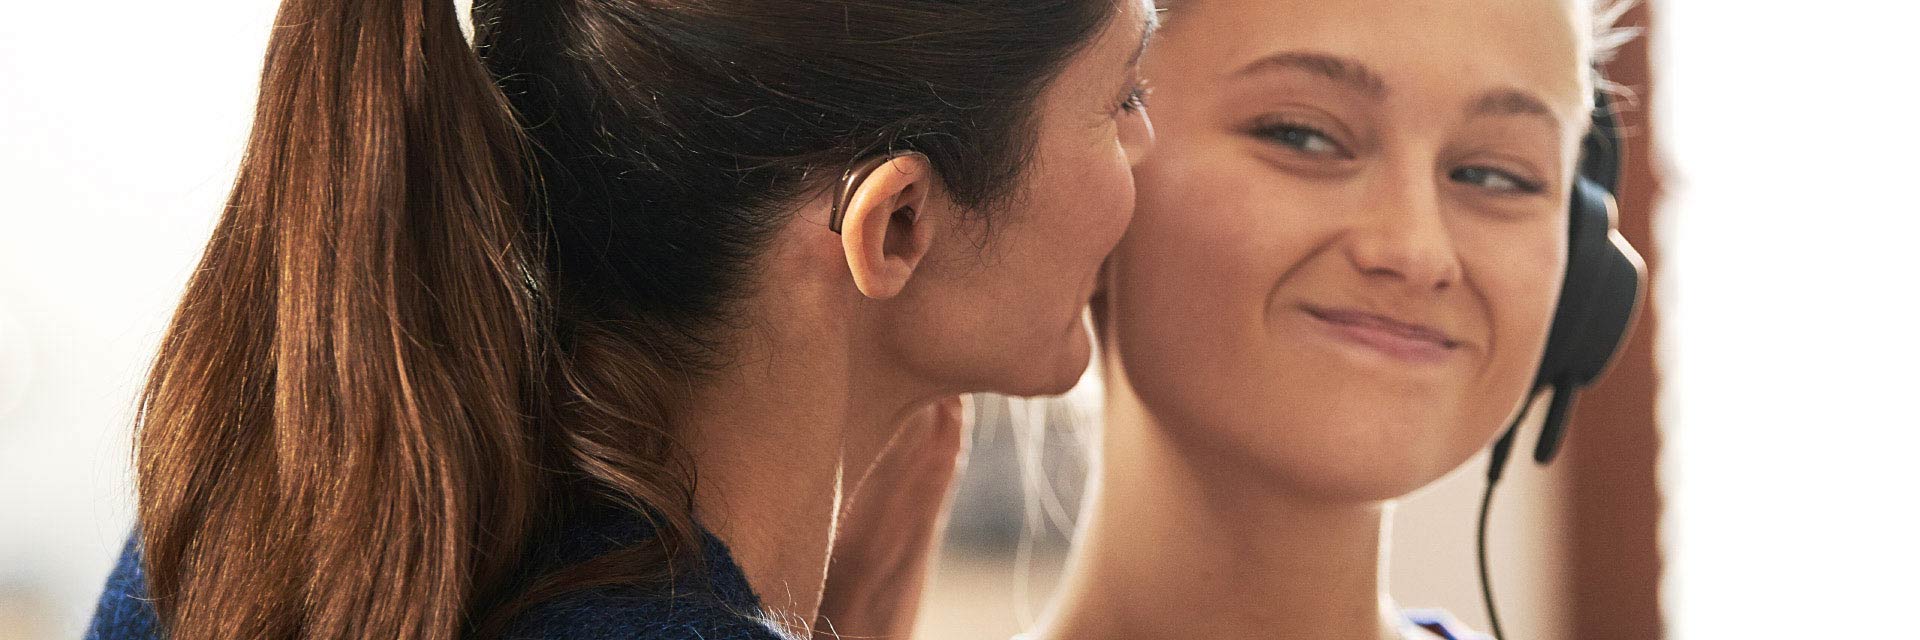 Afbeelding van vrouw met hoorapparaat in haar oor en meisje die naar elkaar glimlachen